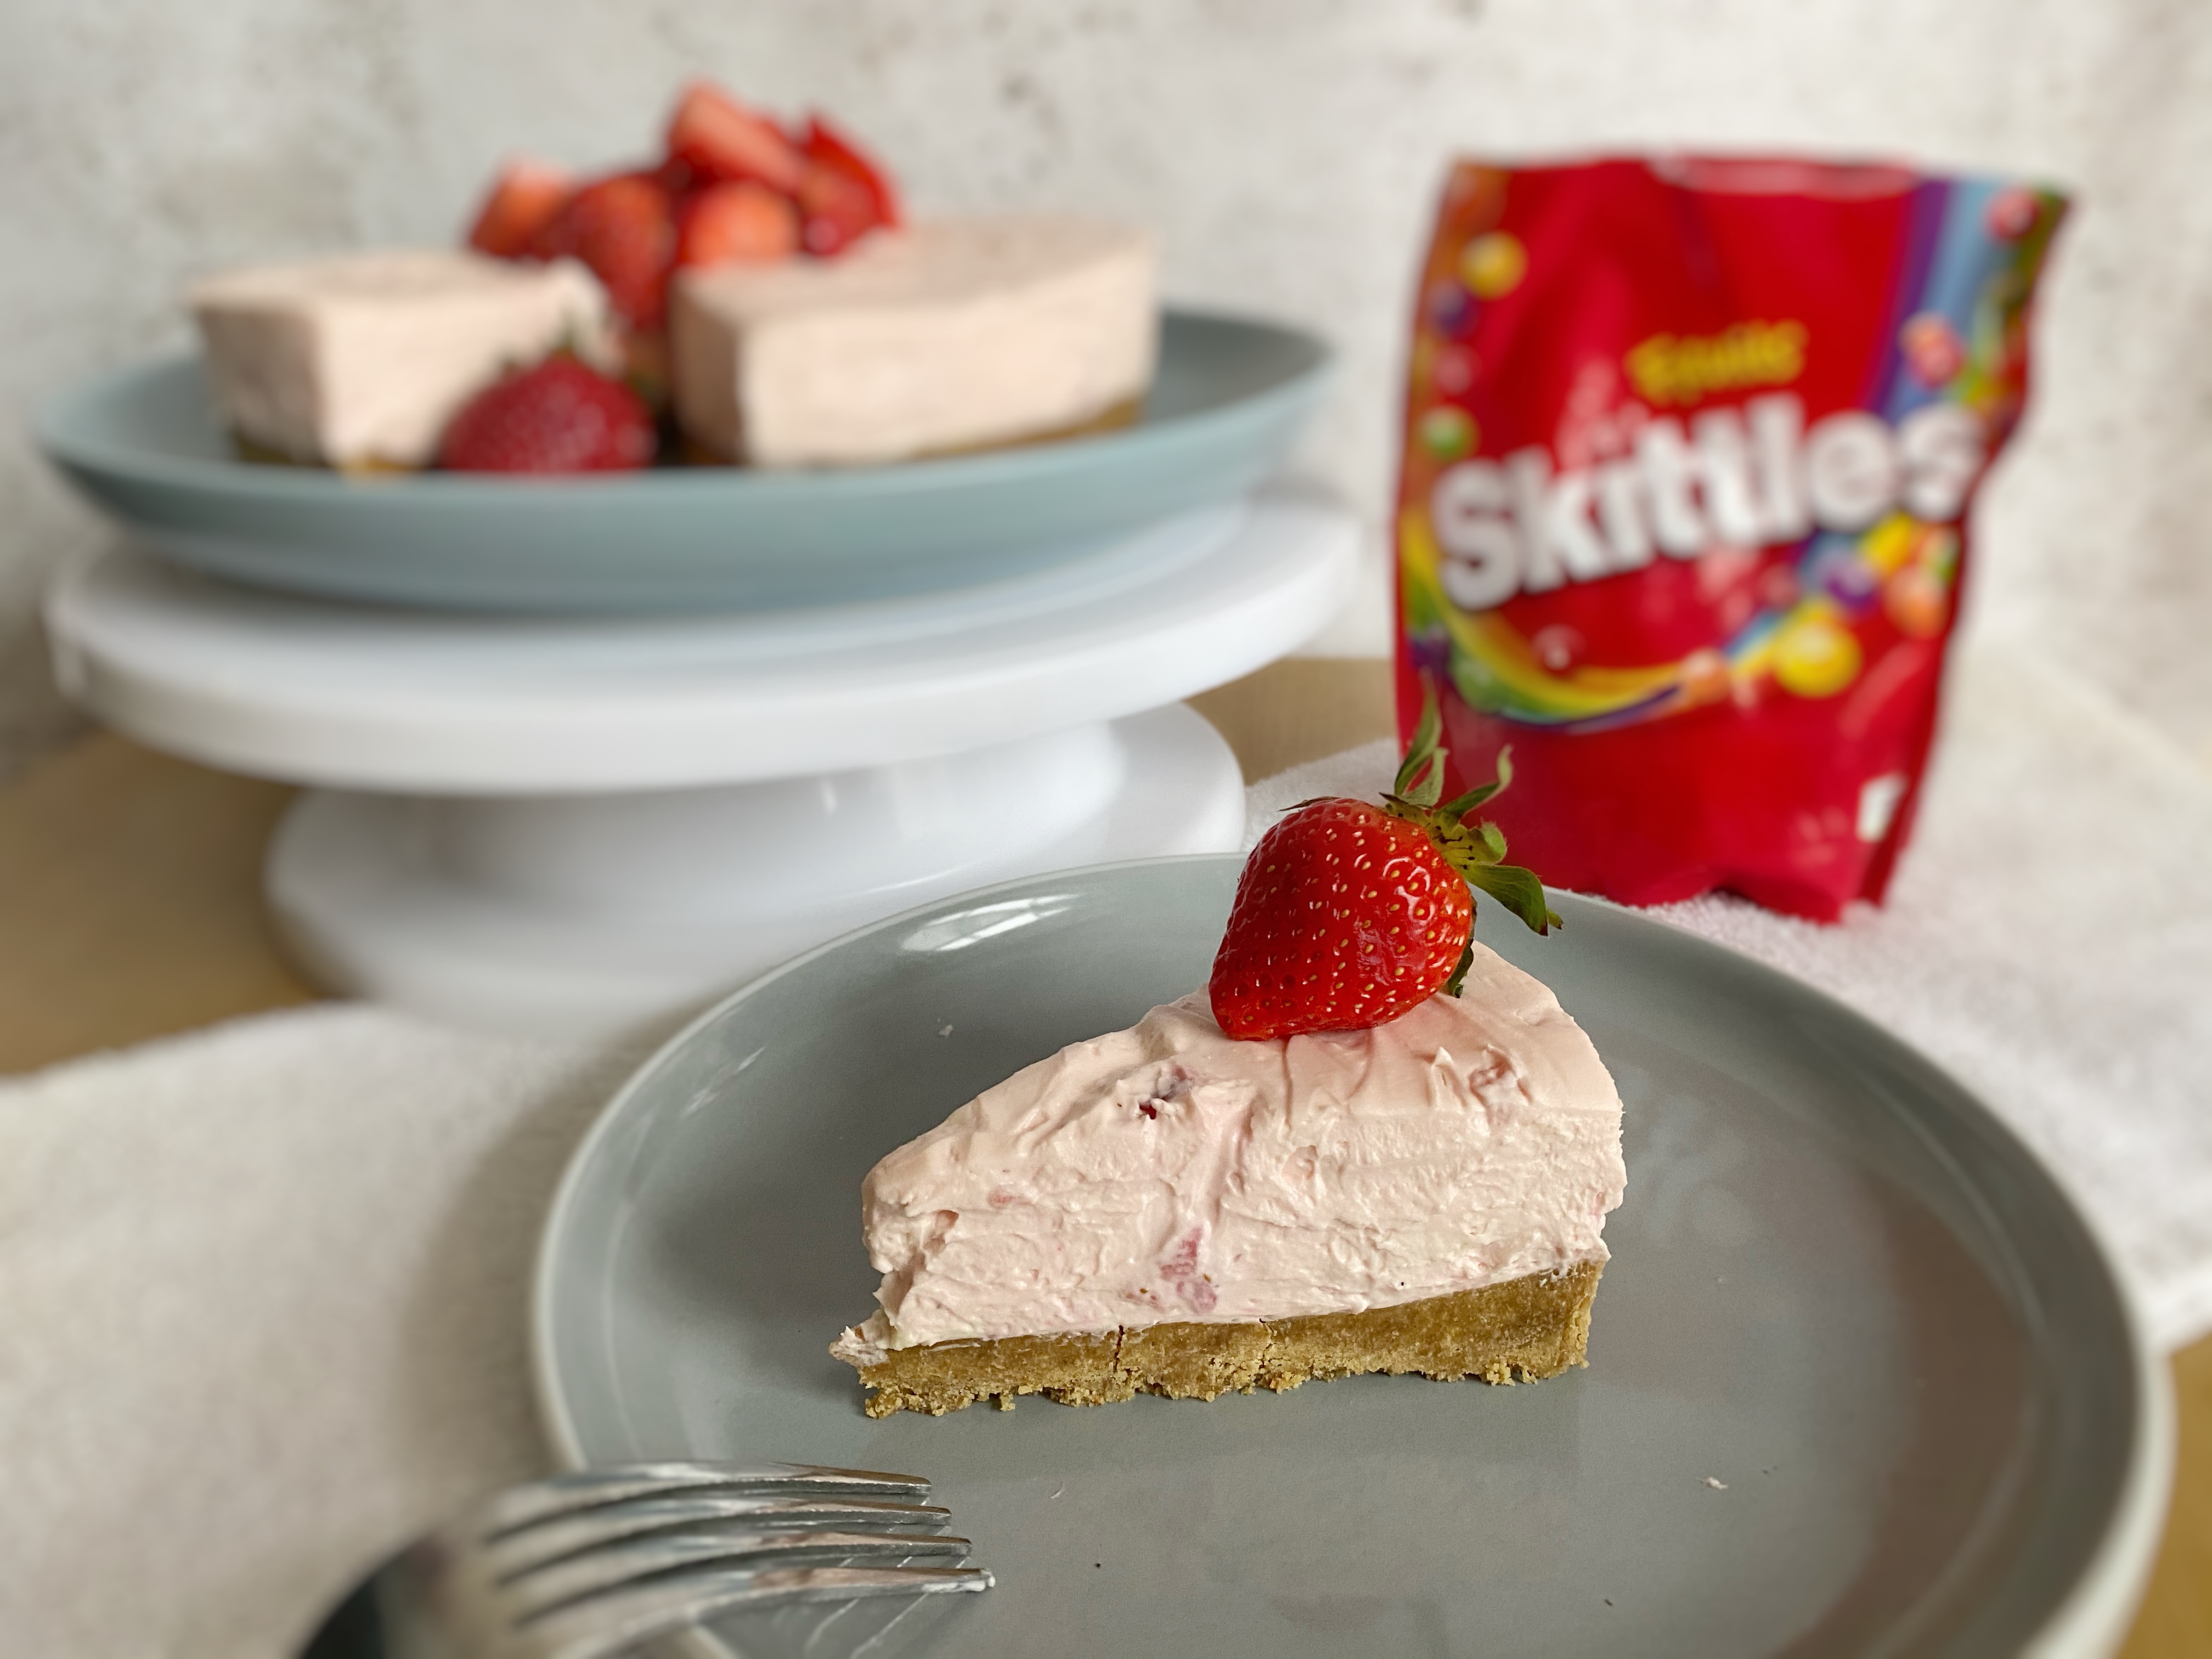 Skittles No-bake Strawberry Cheesecake